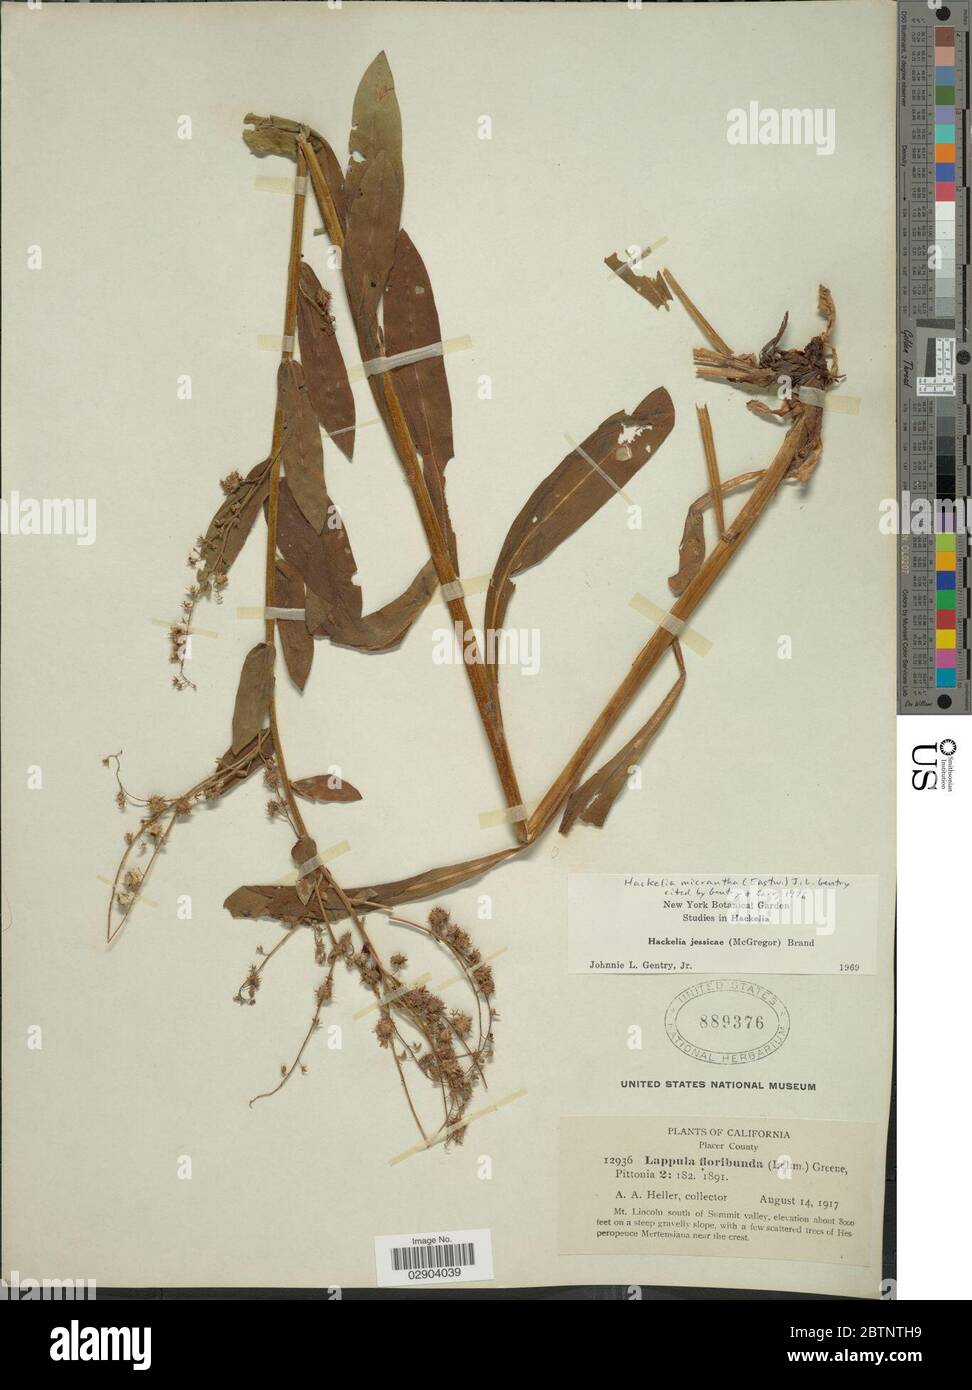 Hackelia micrantha. Stock Photo